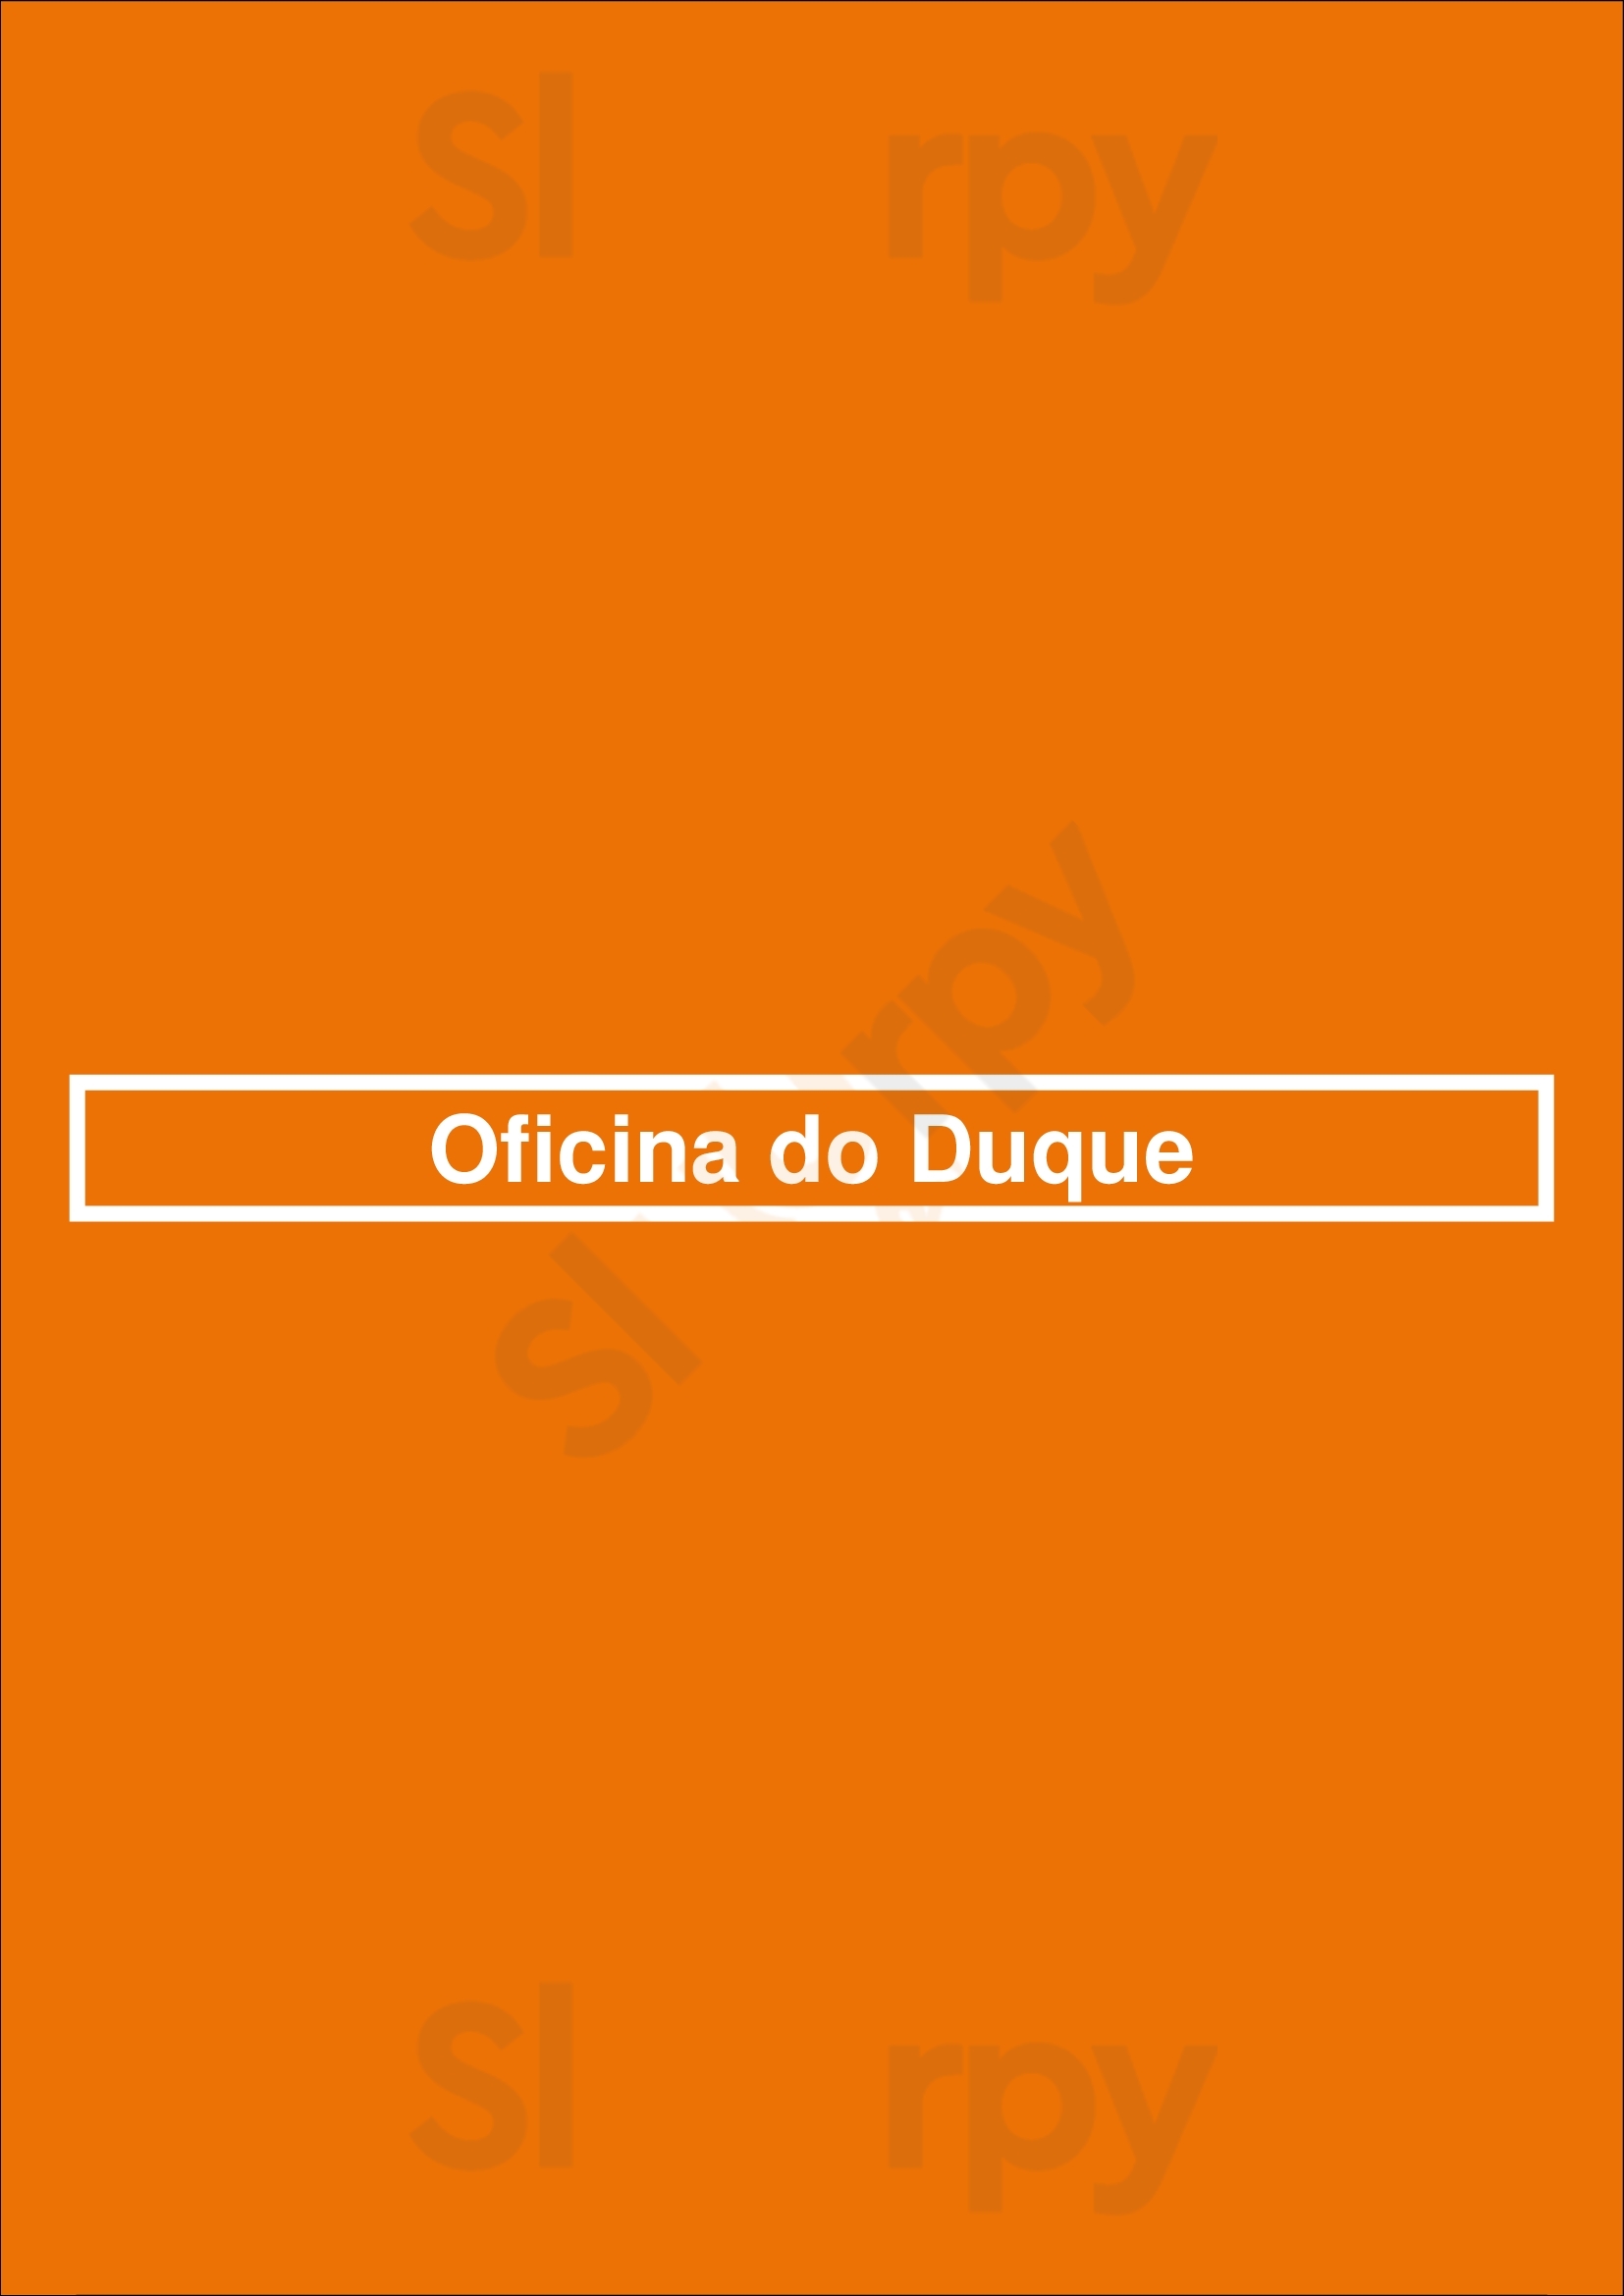 Oficina Do Duque Lisboa Menu - 1